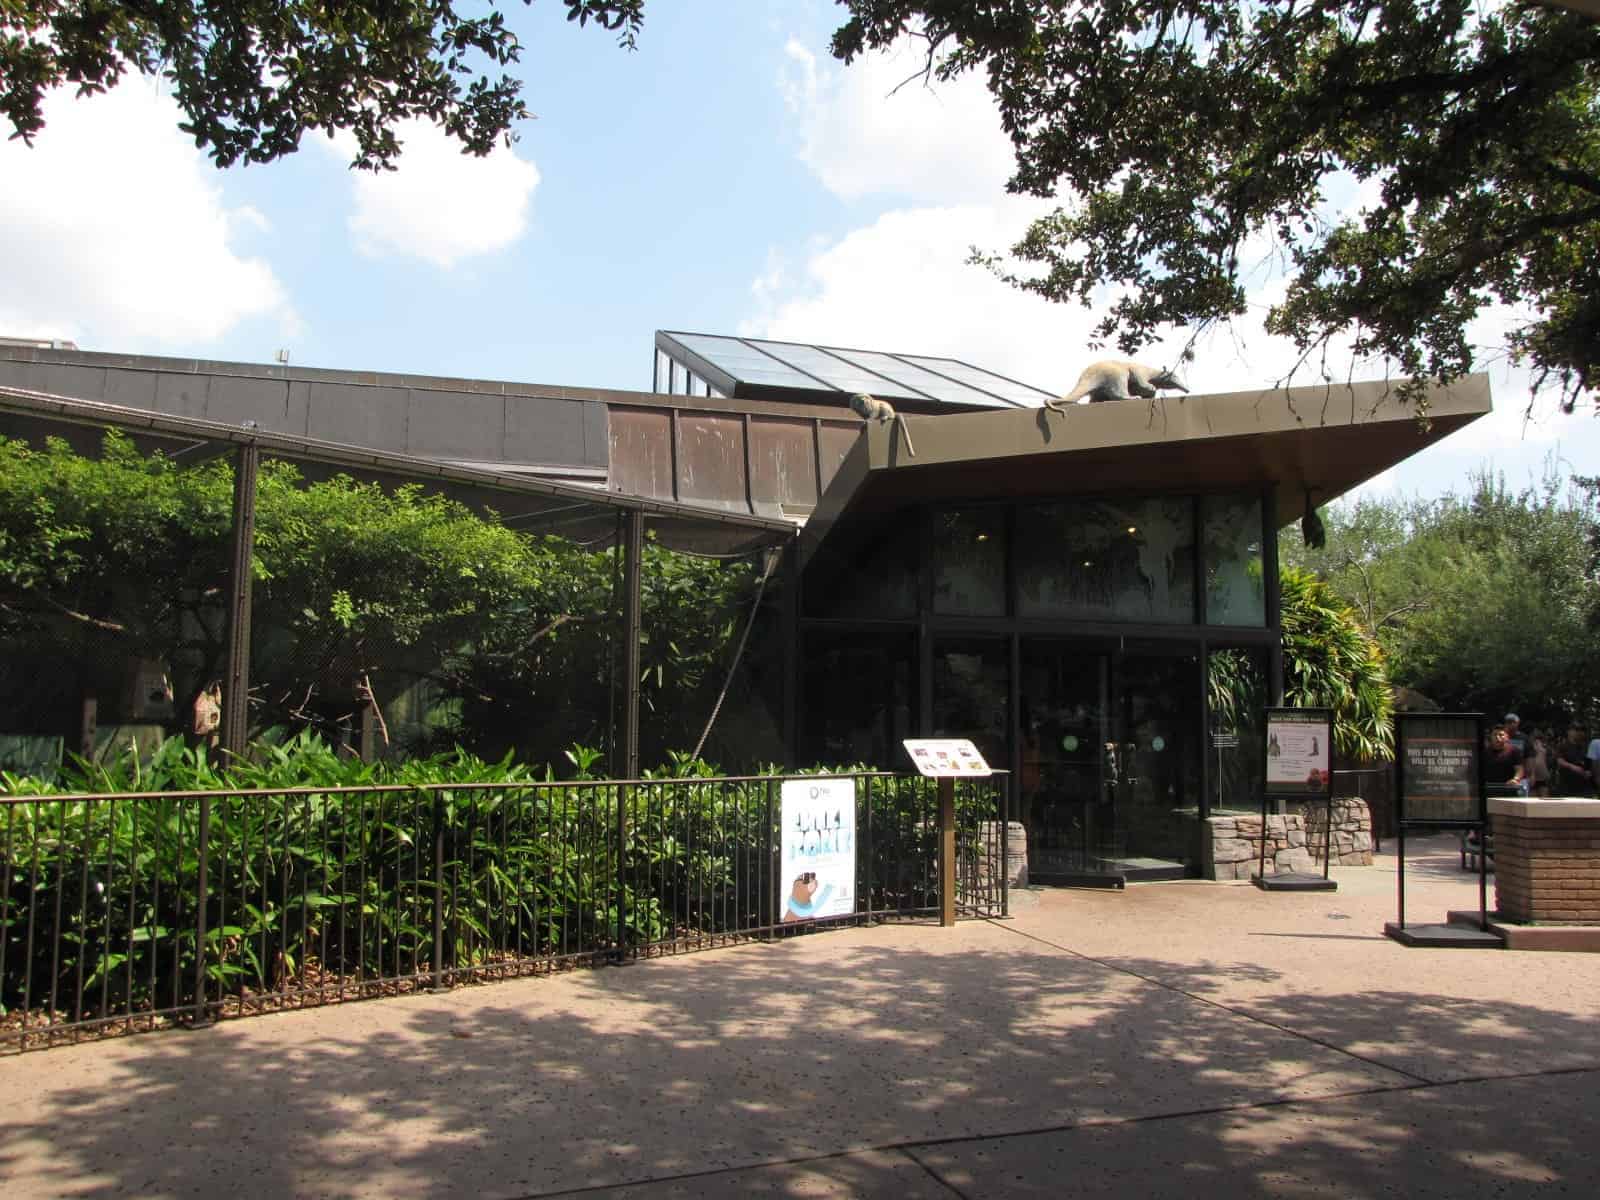 Habitat at Houston Zoo in Houston TX